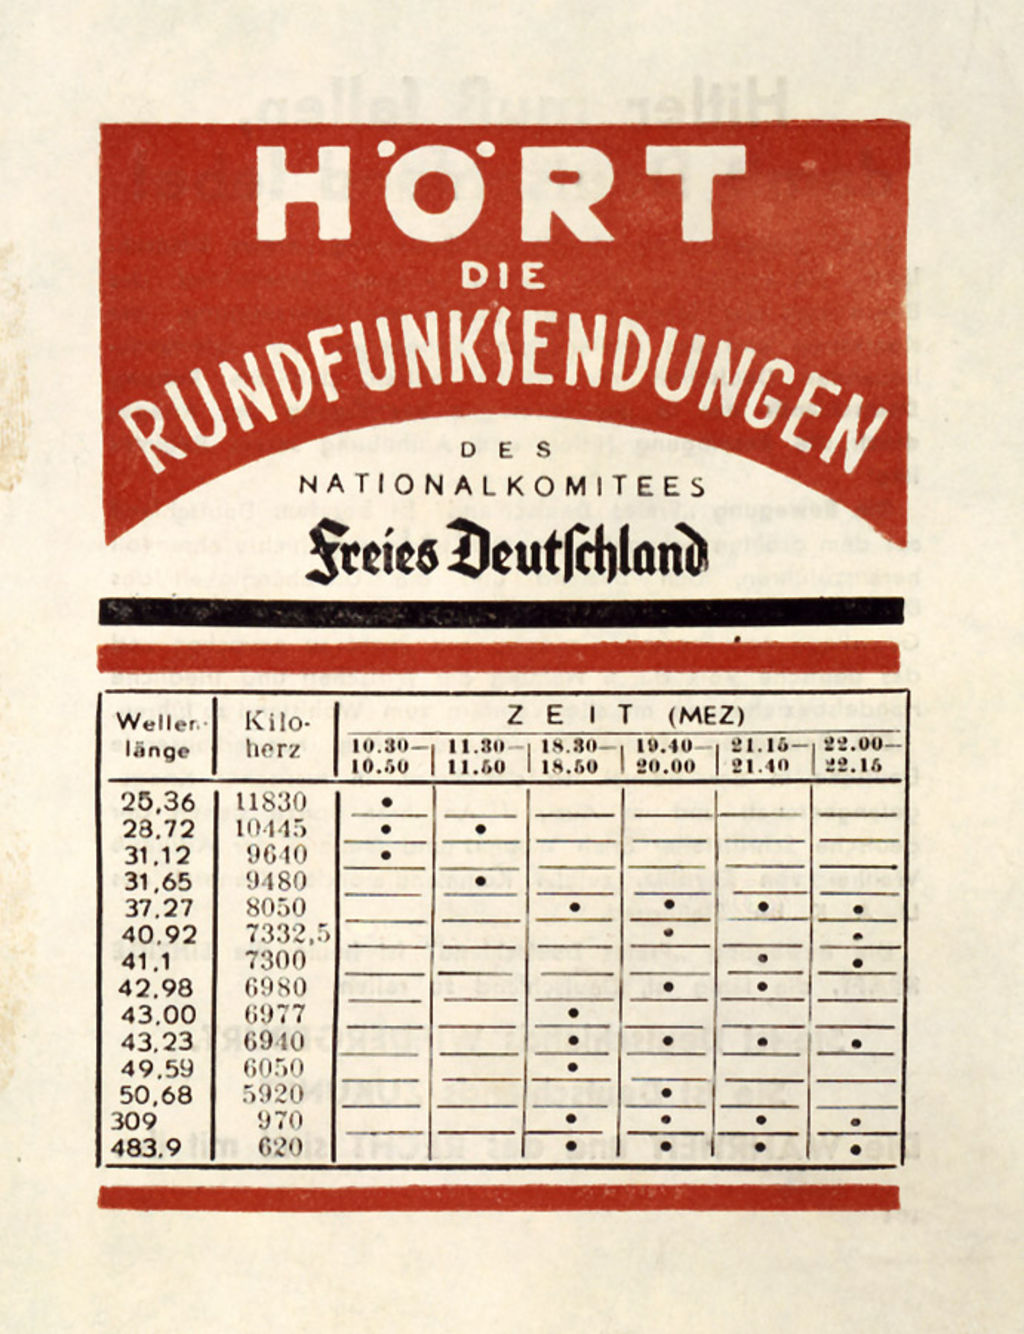 Kriegsflugblatt des Nationalkomitees „Freies Deutschland“ mit Frequenzen und Sendezeiten des NKFD-Rundfunkprogramms, herausgegeben 1944